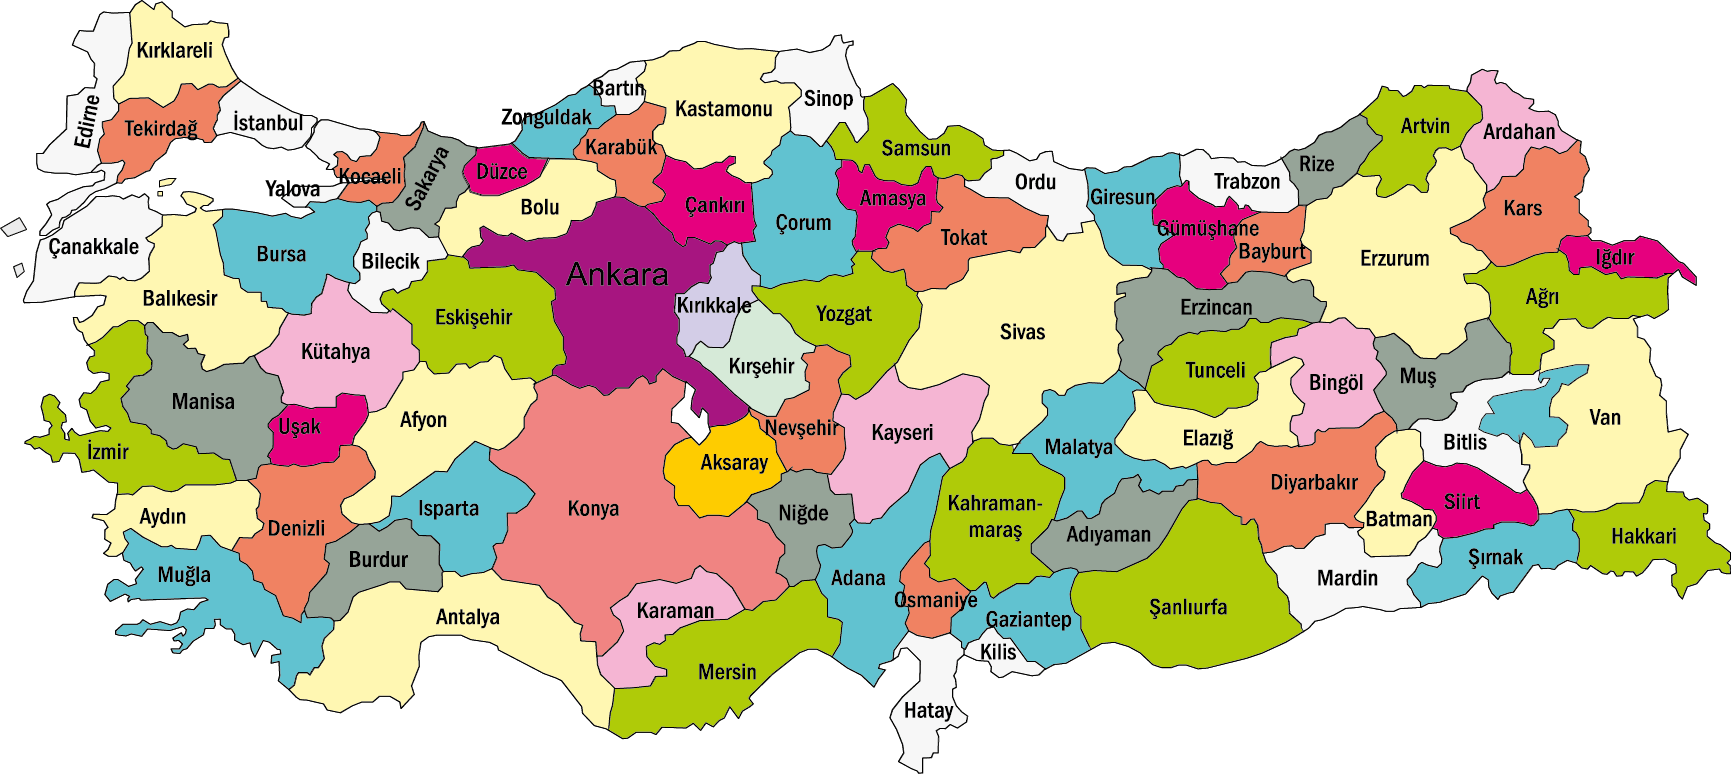 Turkey Map - Türkiye Haritası - PNG Logo Vector Downloads (SVG, EPS)